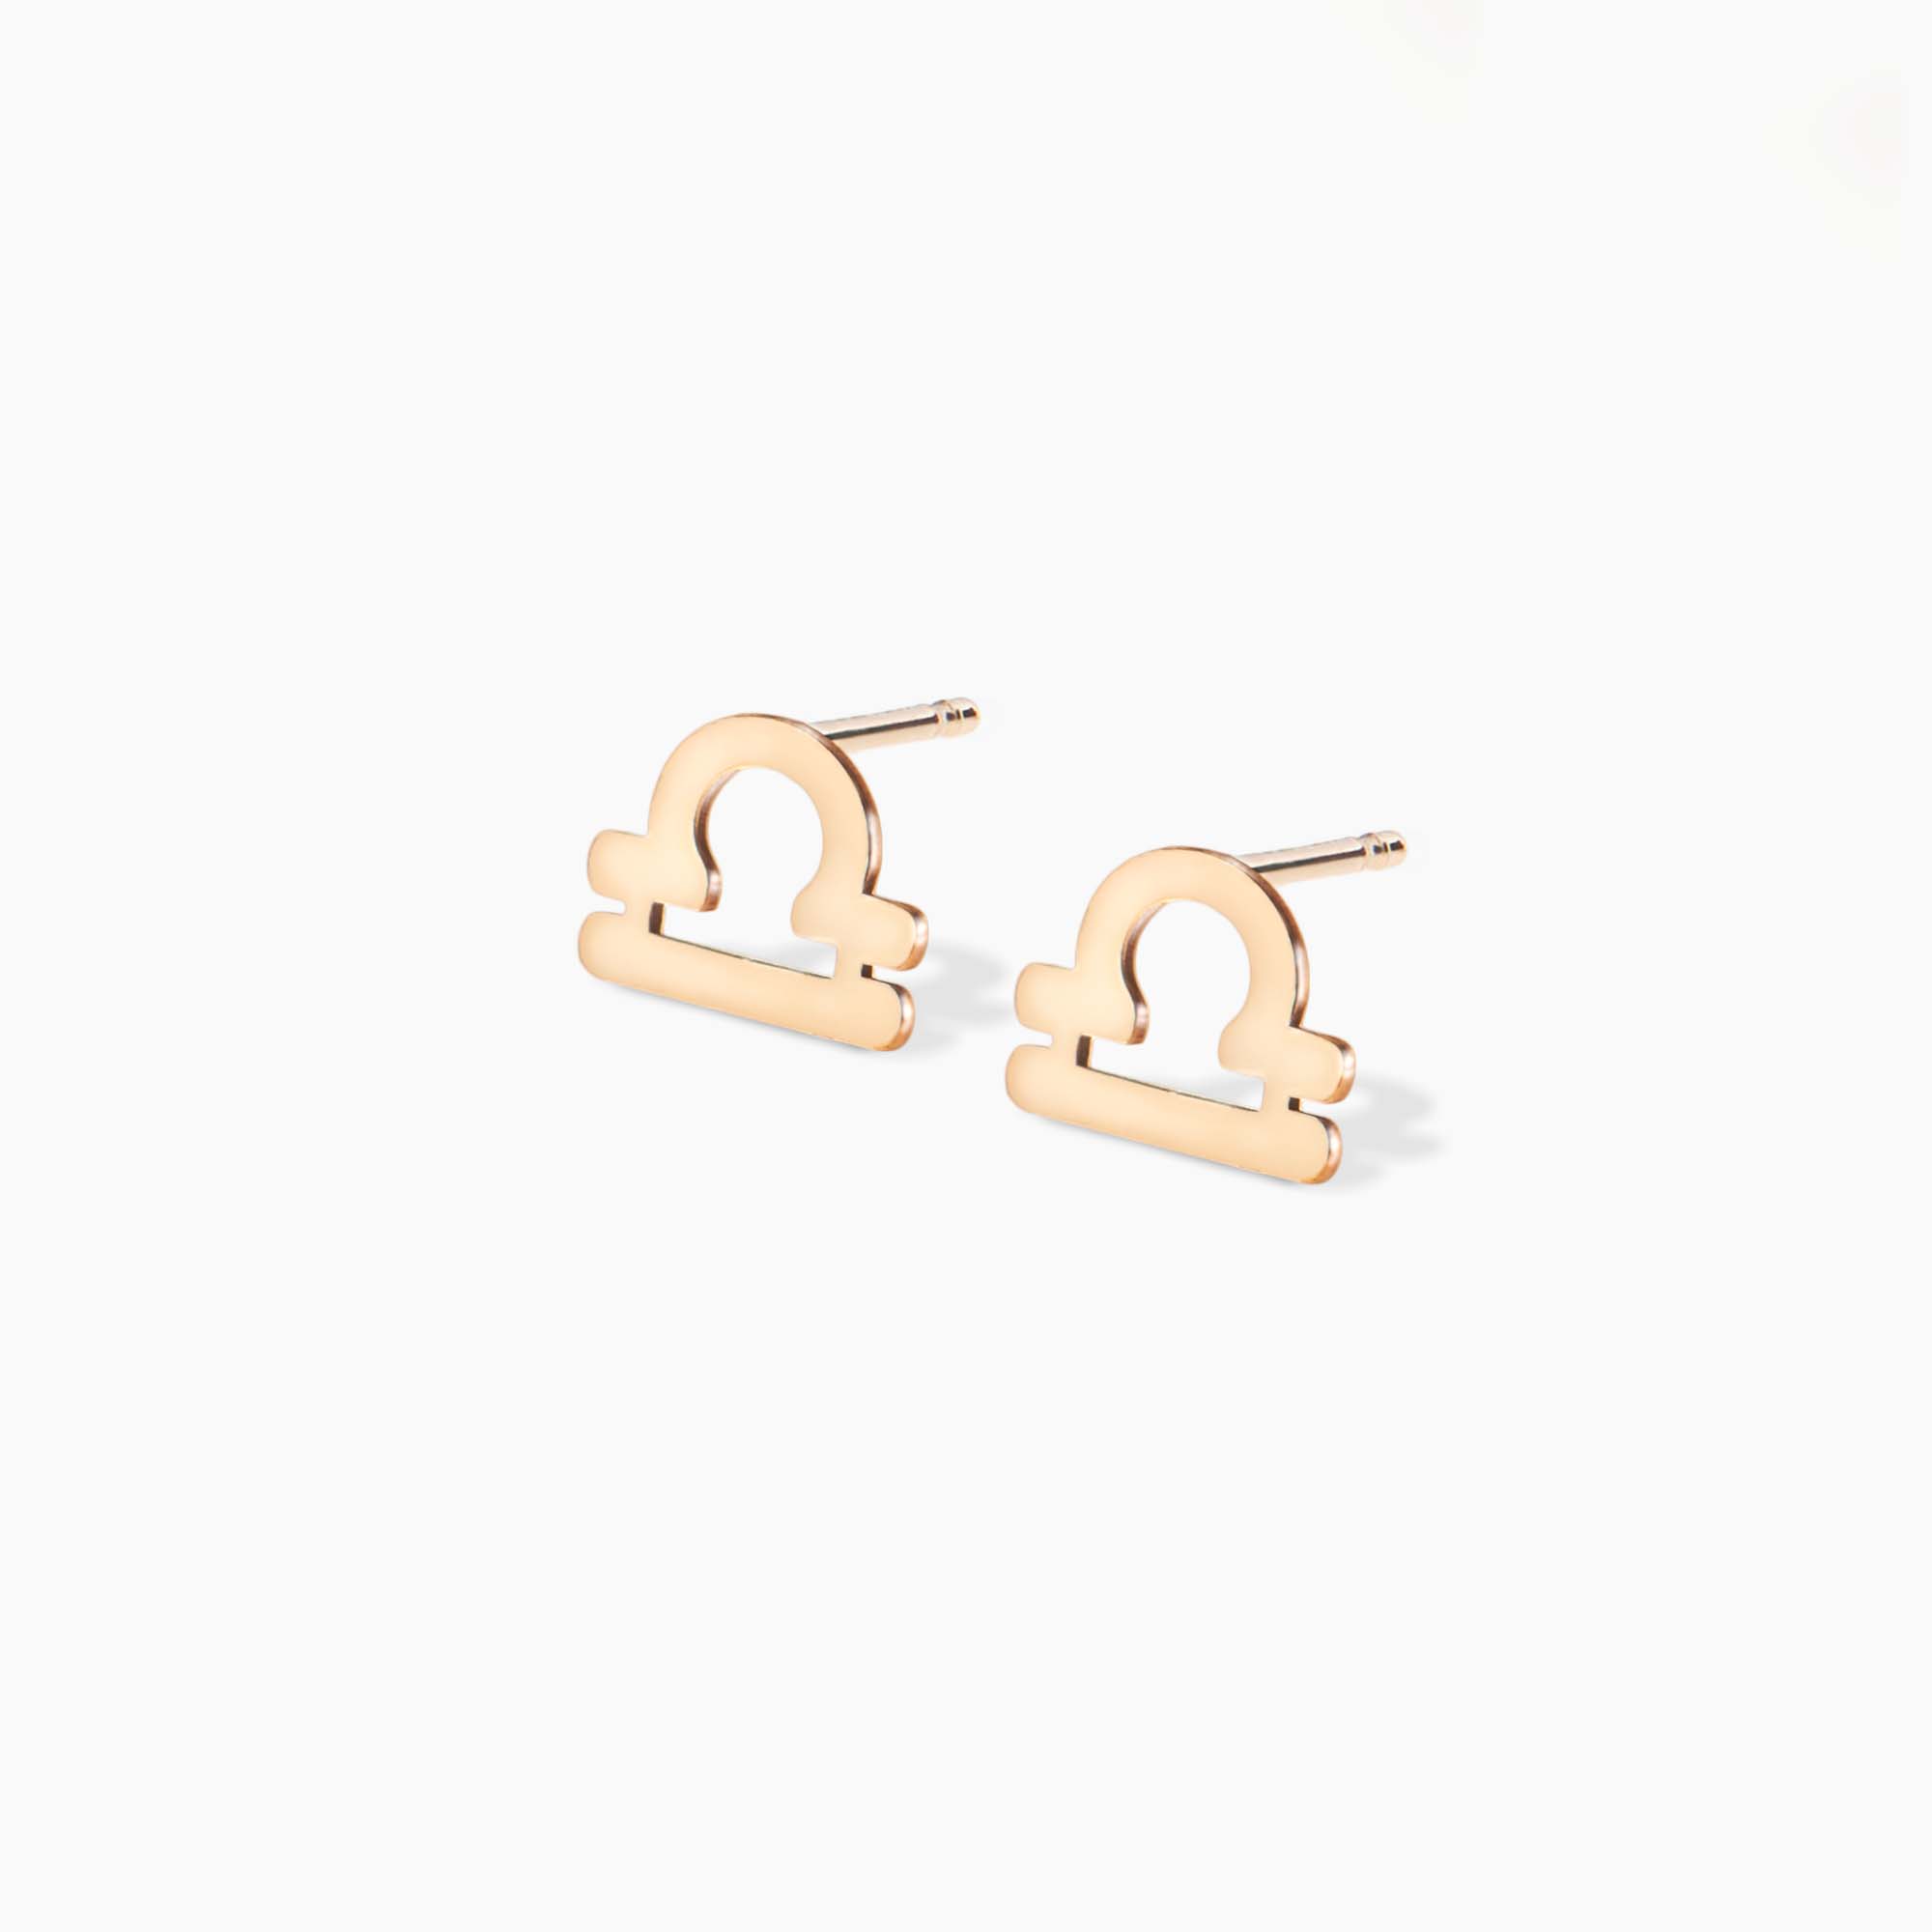 Zodiac Stud Earrings